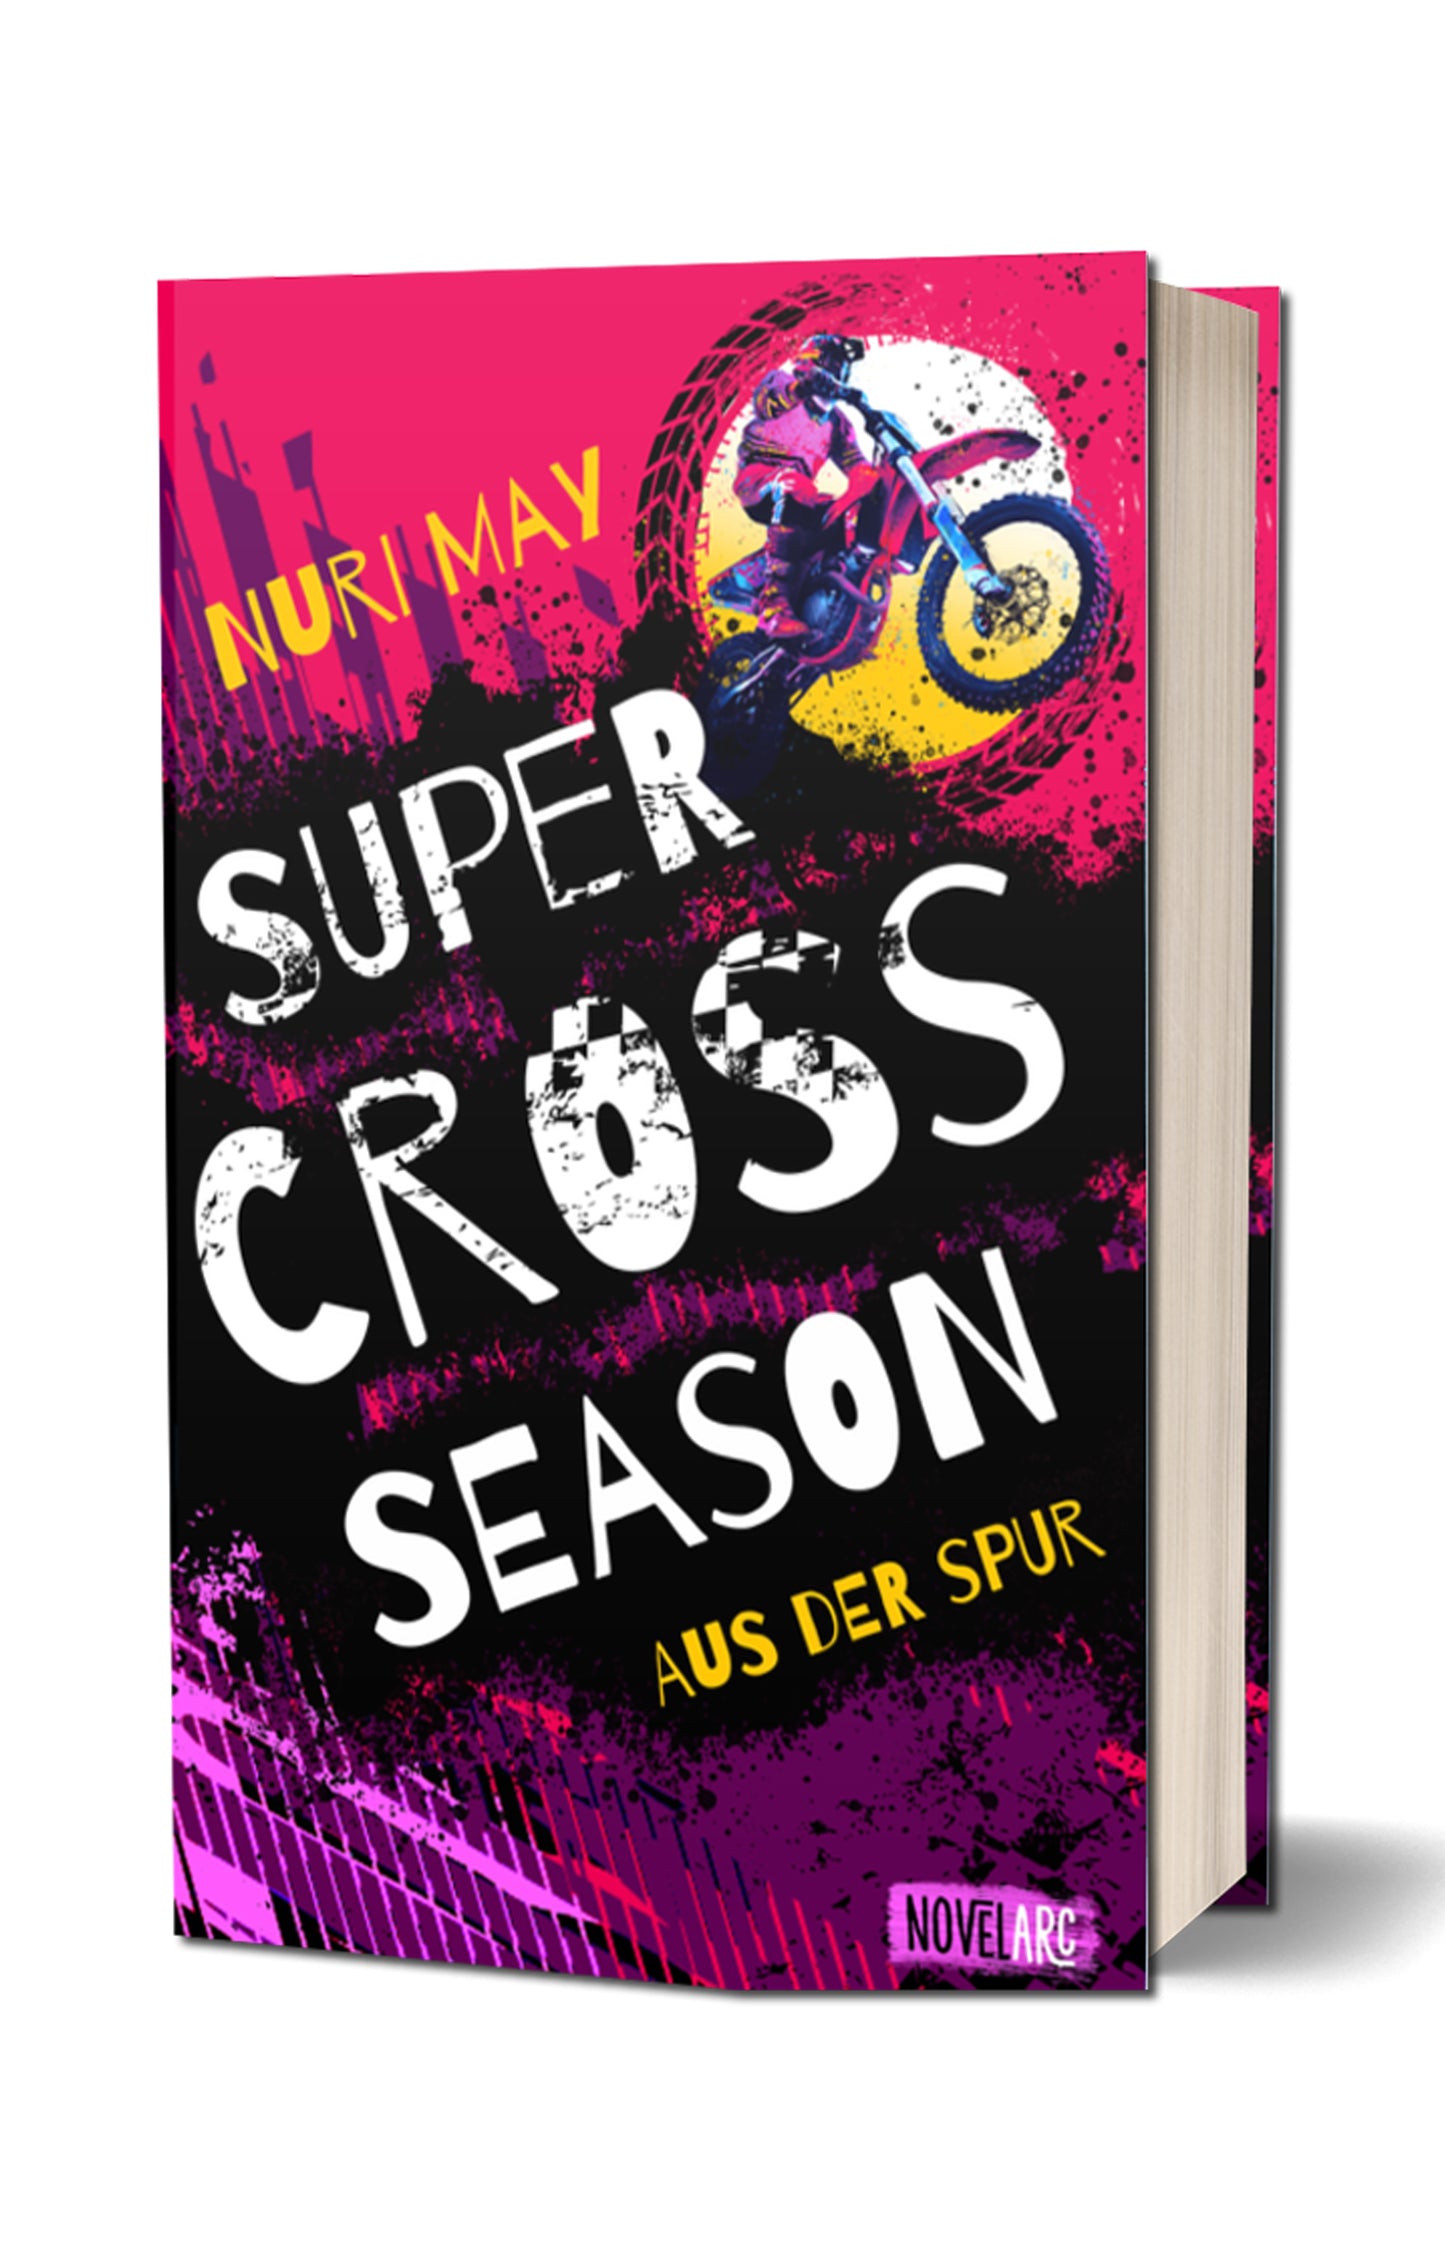 [signiert] Supercross Season - Aus der Spur: Ein Sports-Romance-Roman voller rasanter Action und brennender Leidenschaft.